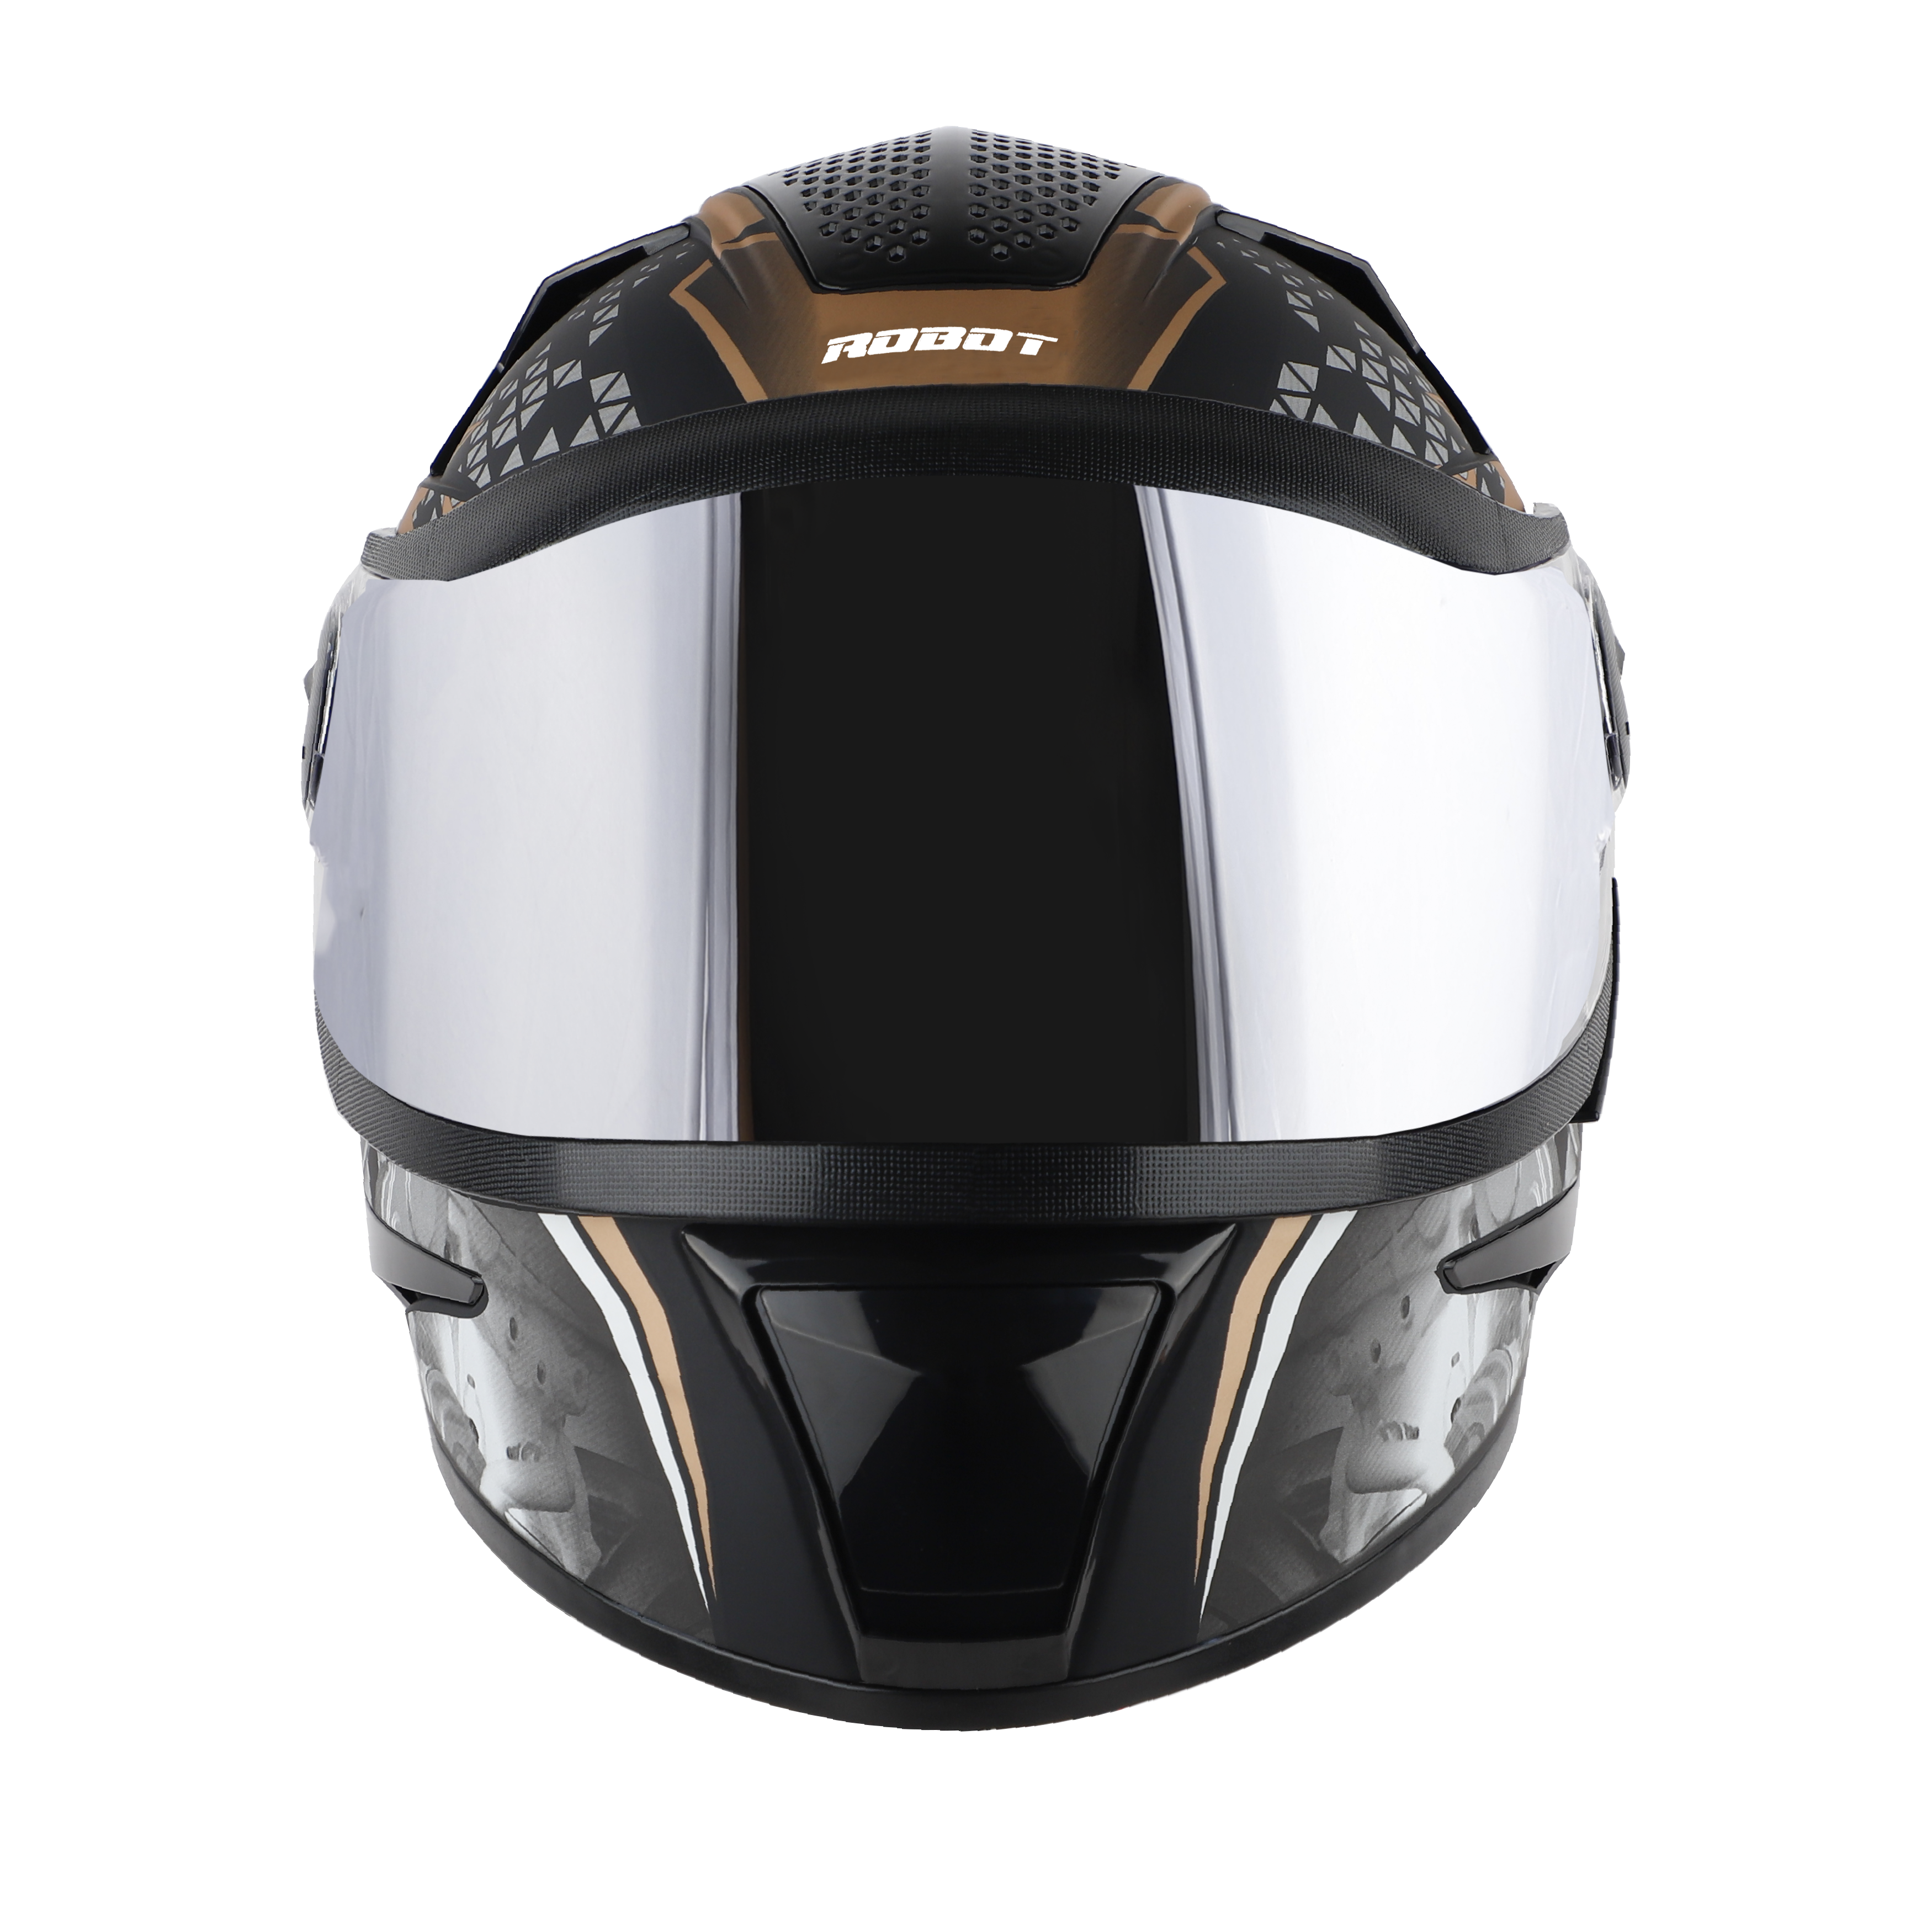 Steelbird SBH-17 Ignimeter Full Face ISI Certified Graphic Helmet (Matt Black Gold With Chrome Silver Visor)